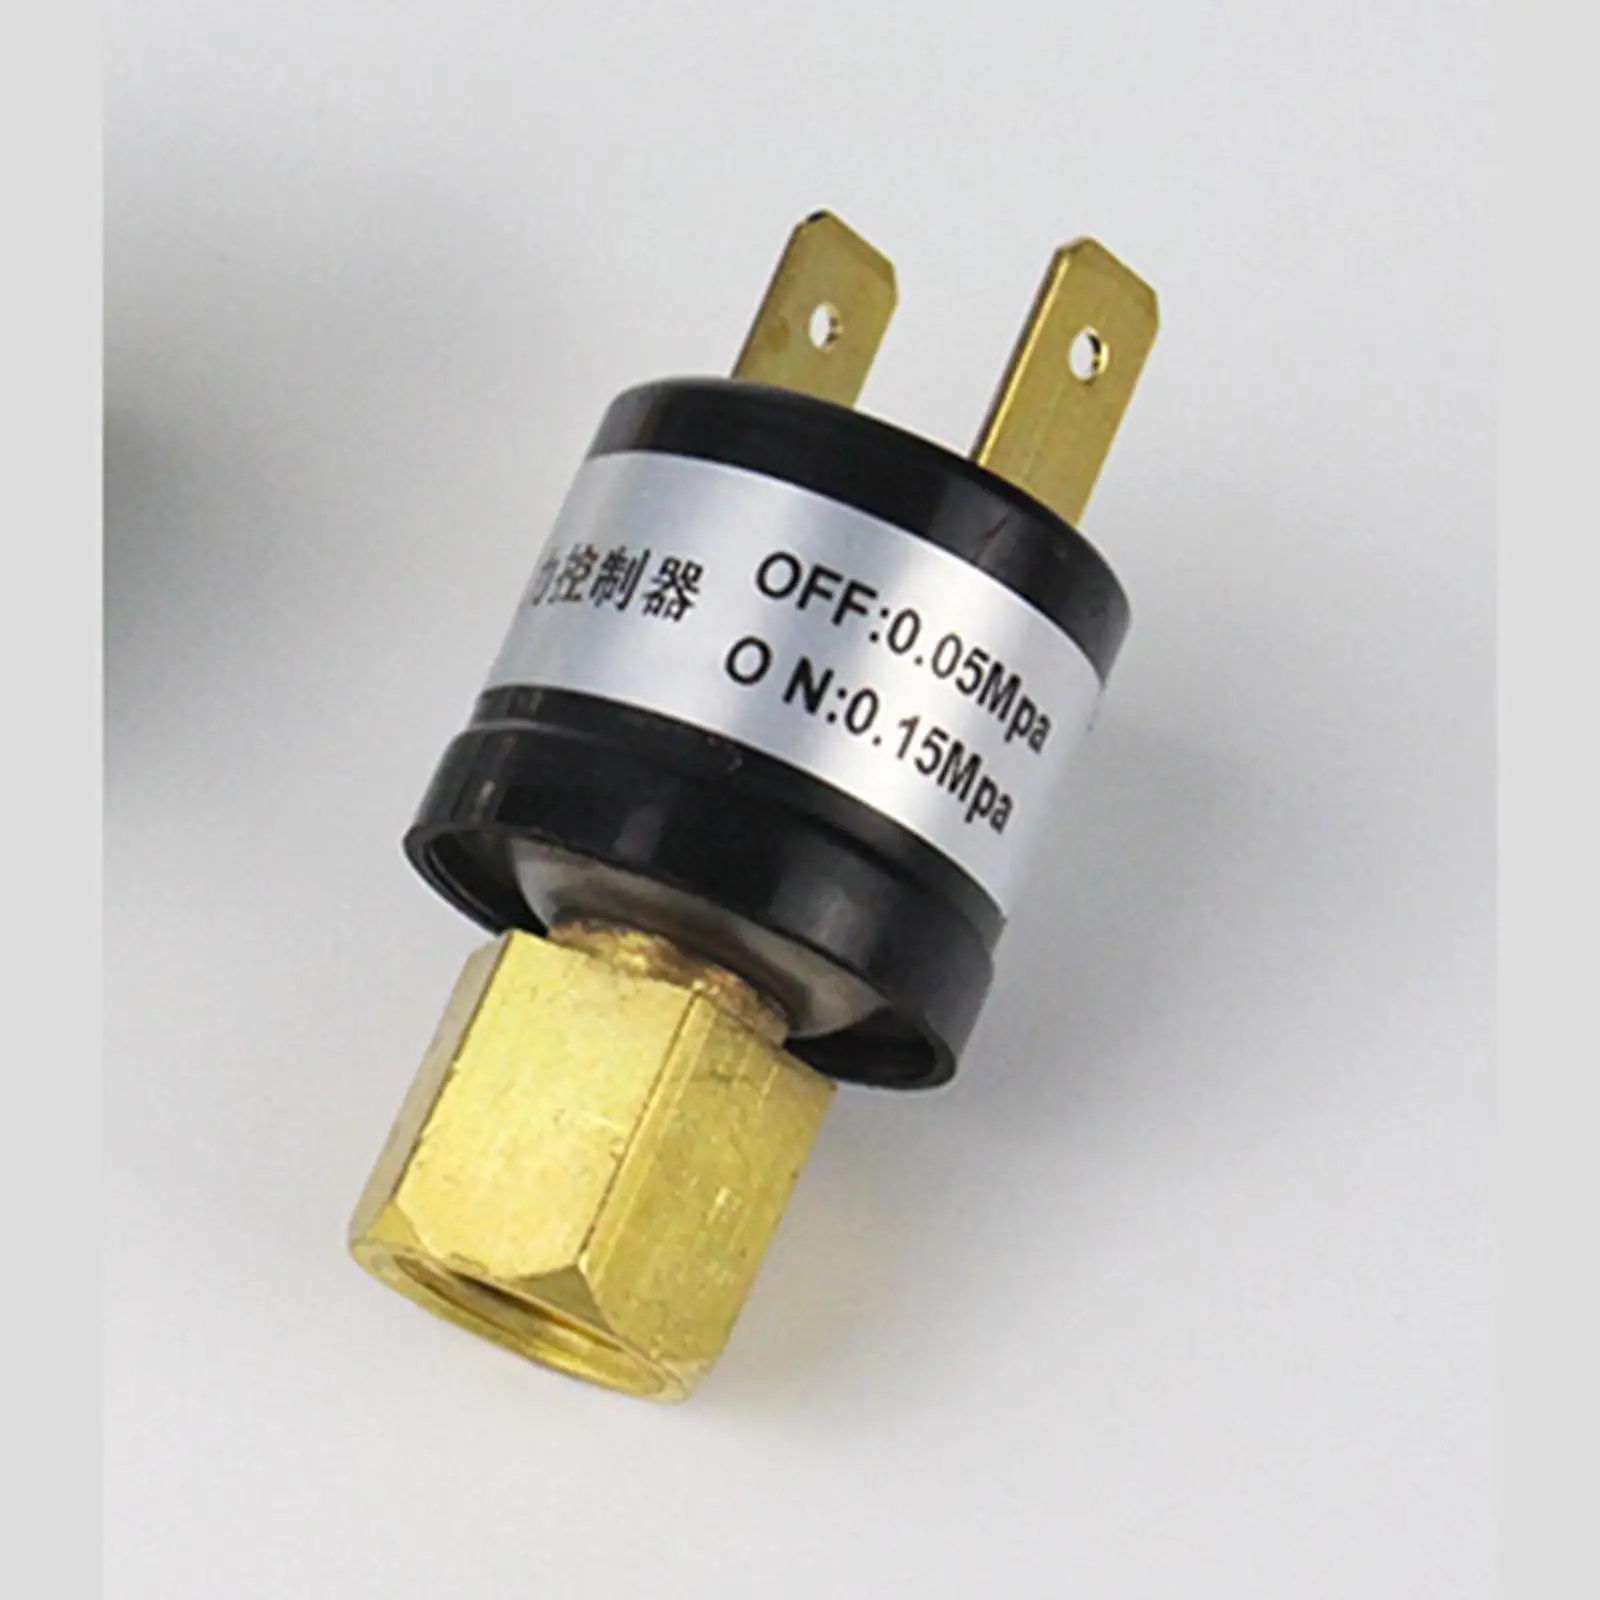 SAE 7/16 " 20 ниток 0 05 0.15Mpa(OFF) переключатель давления для воздушного компрессора